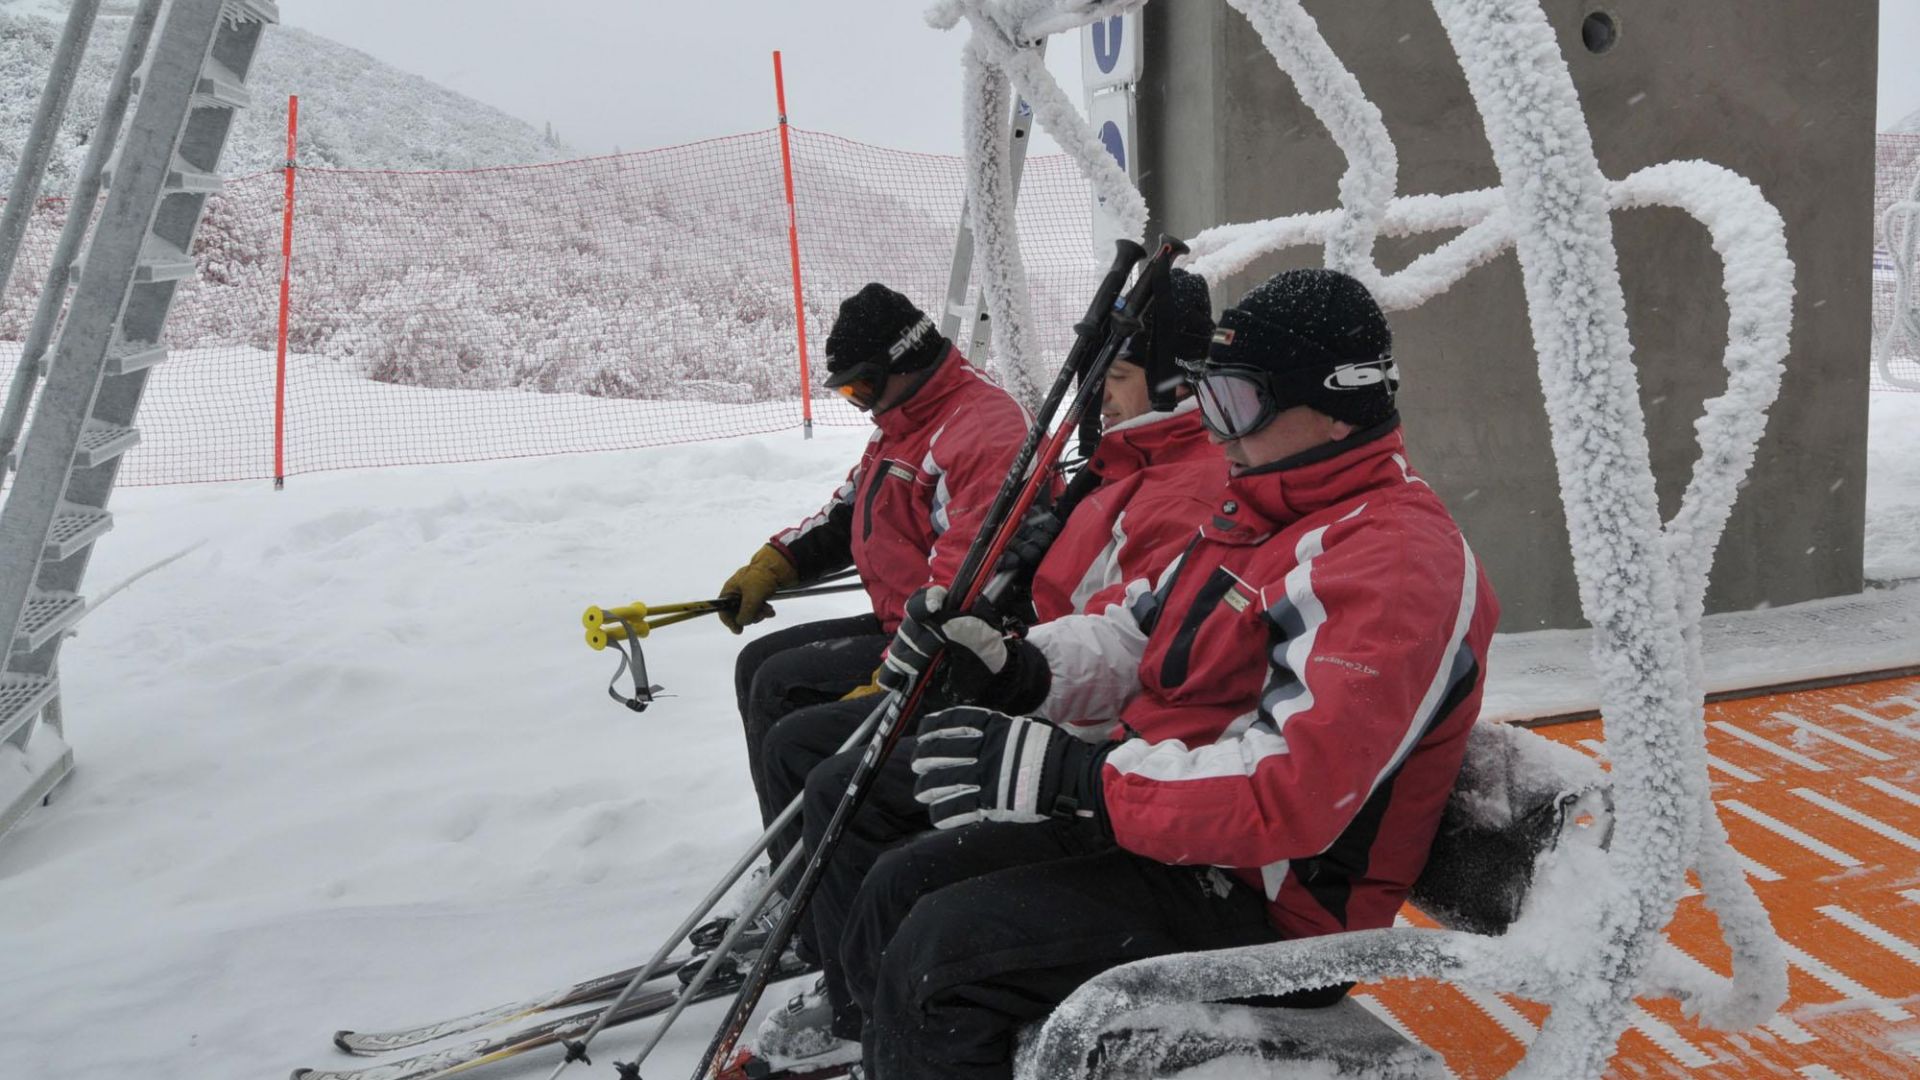 Близо 3 часа планинските спасители издирваха сноубордист, отклонил се от